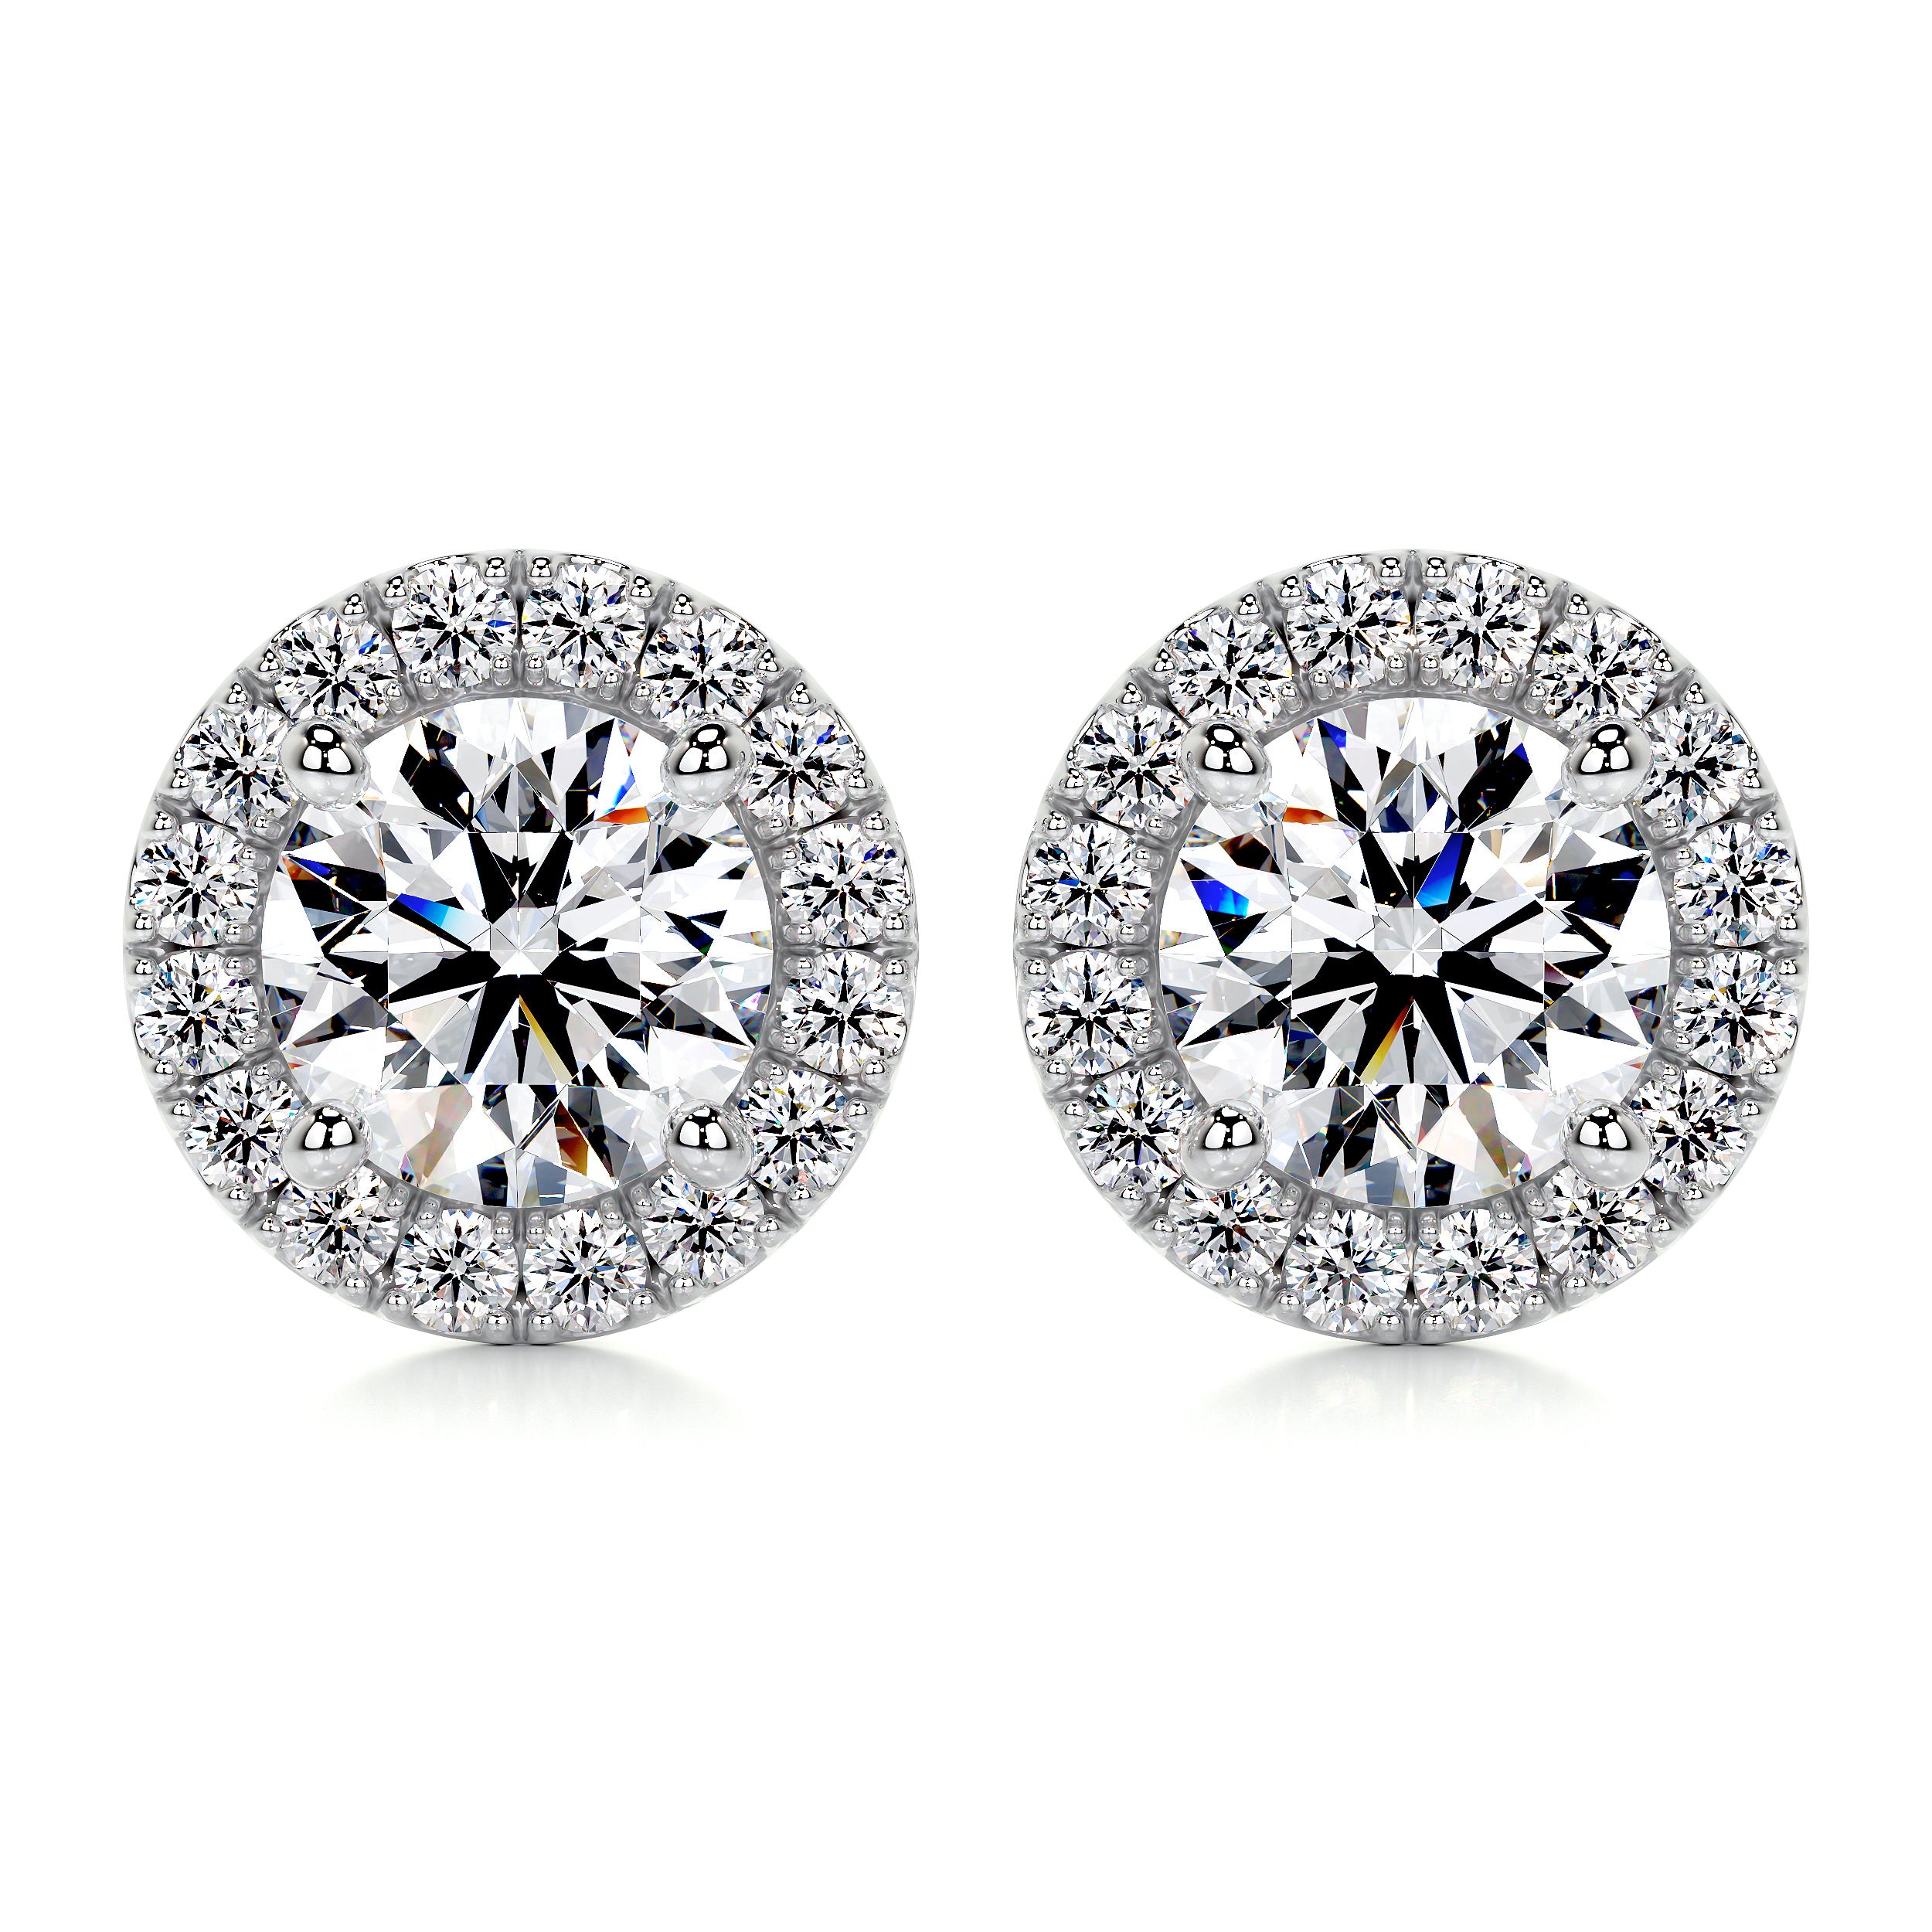 Erica Diamond Earrings -14K White Gold